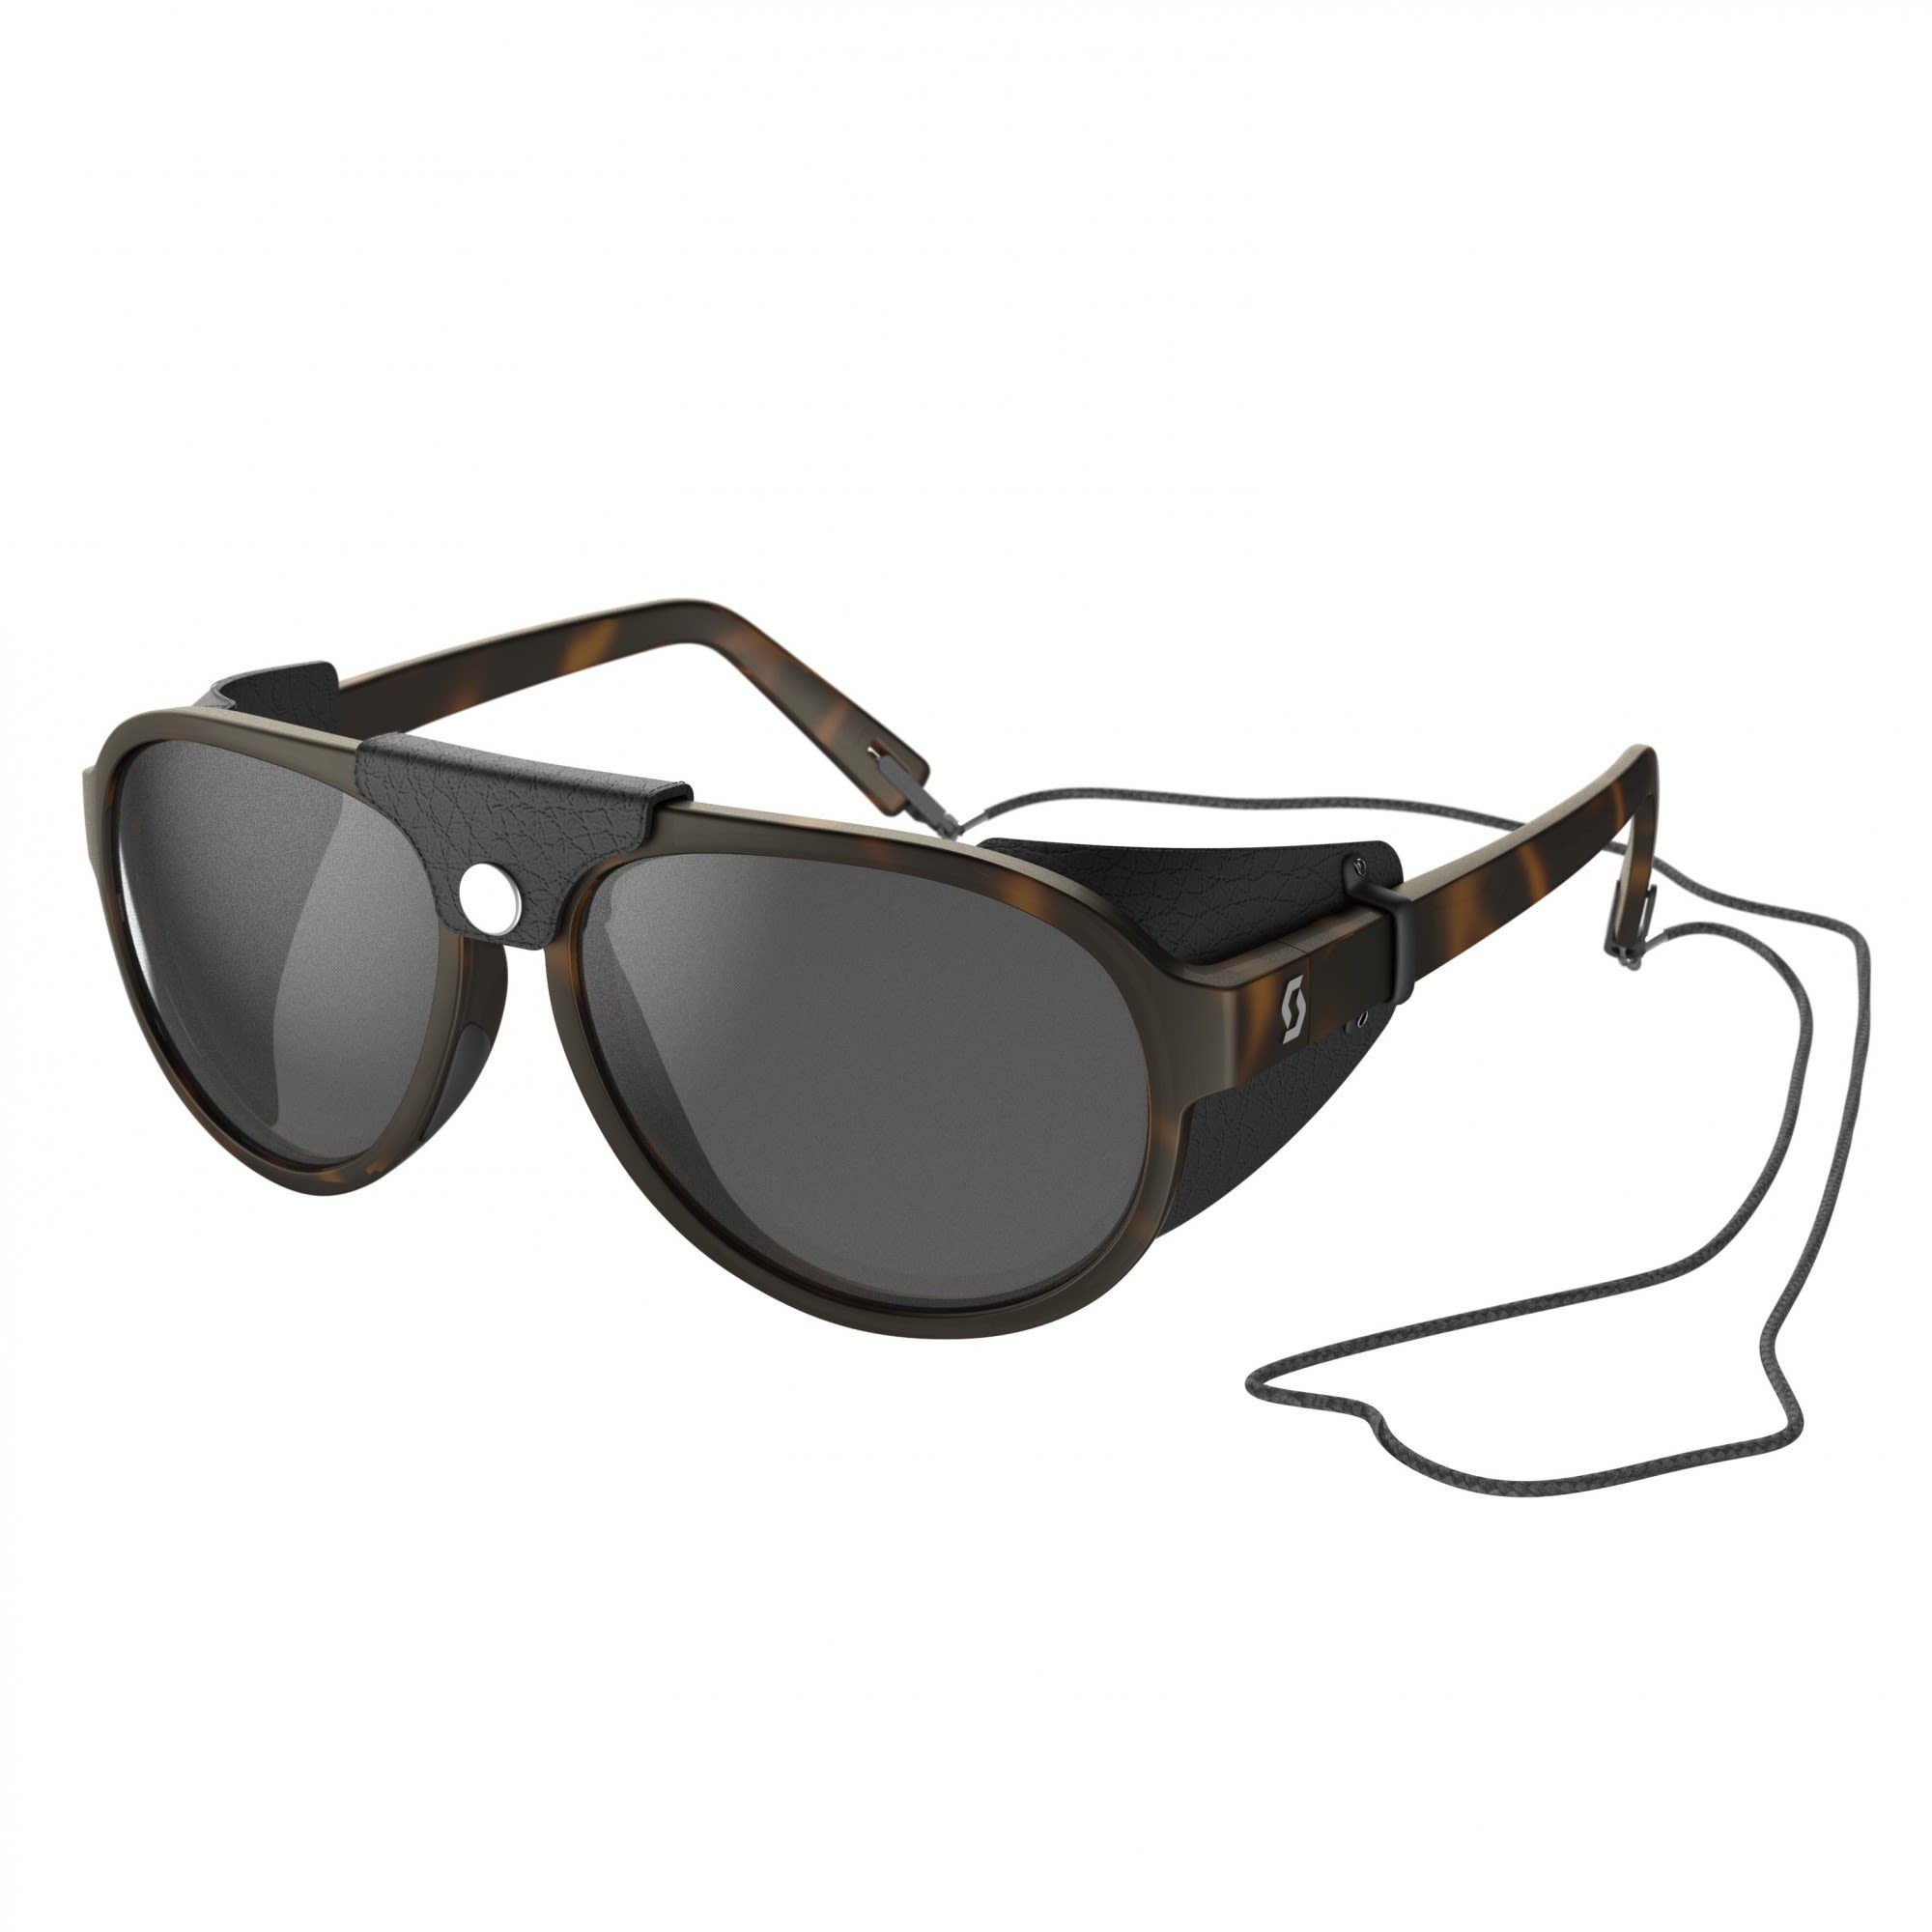 Scott Sportbrille Scott Cervina Sunglasses Accessoires Tortoise Brown - Grey